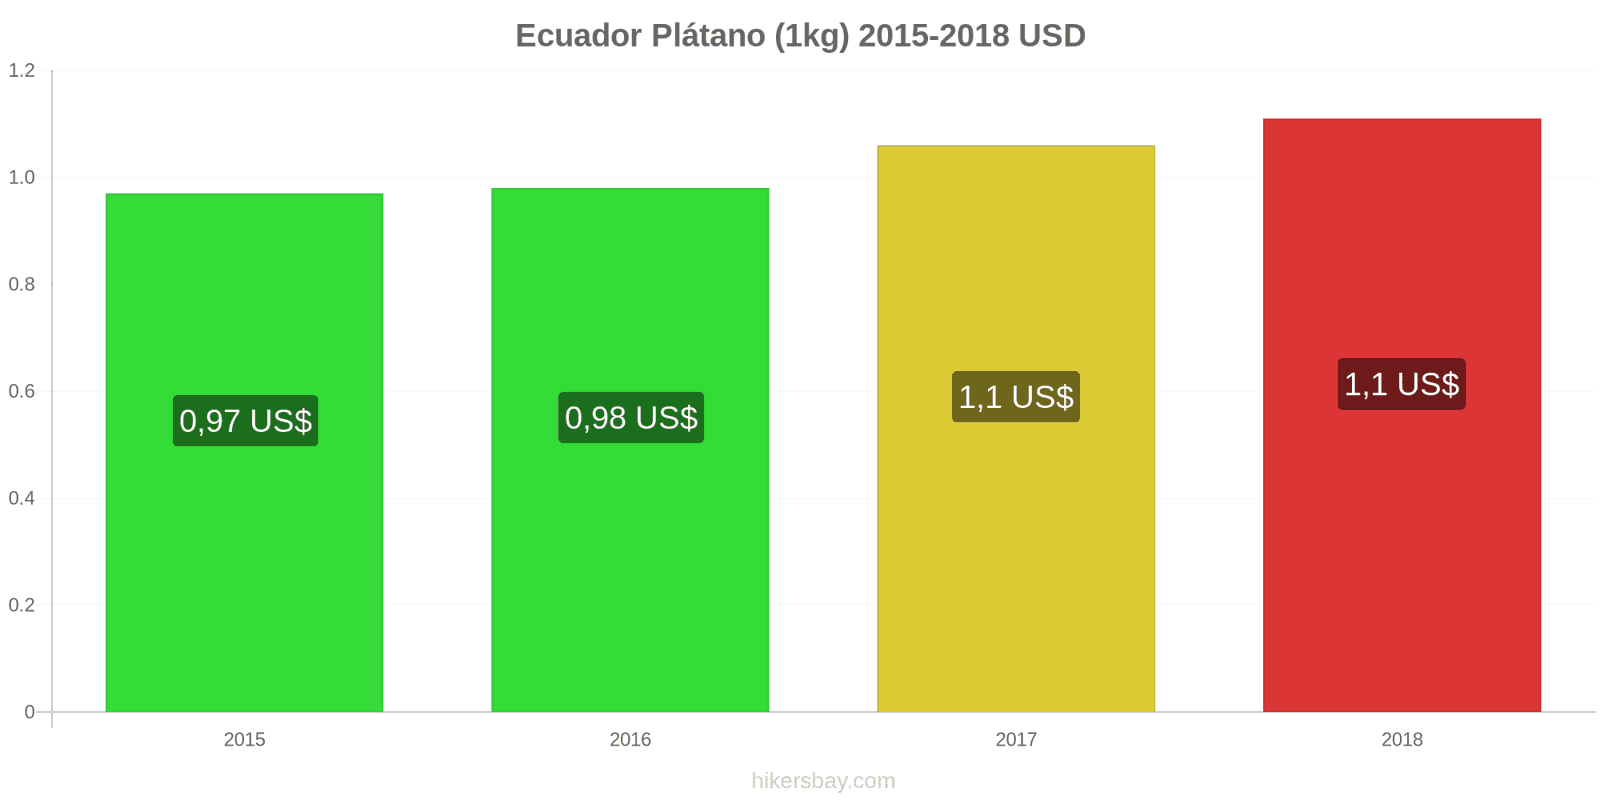 Ecuador cambios de precios Plátanos (1kg) hikersbay.com